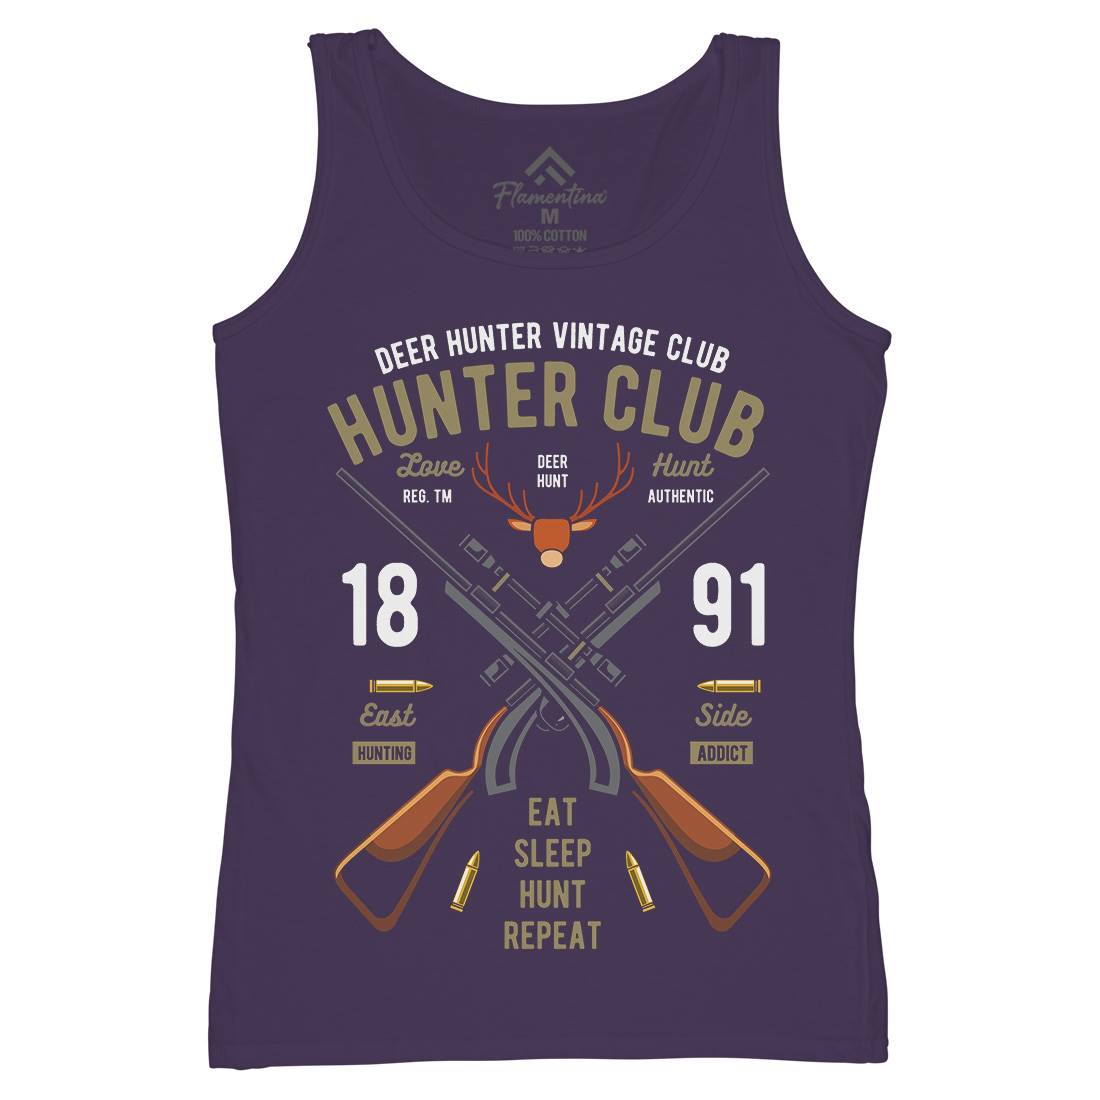 Hunter Club Womens Organic Tank Top Vest Sport C378